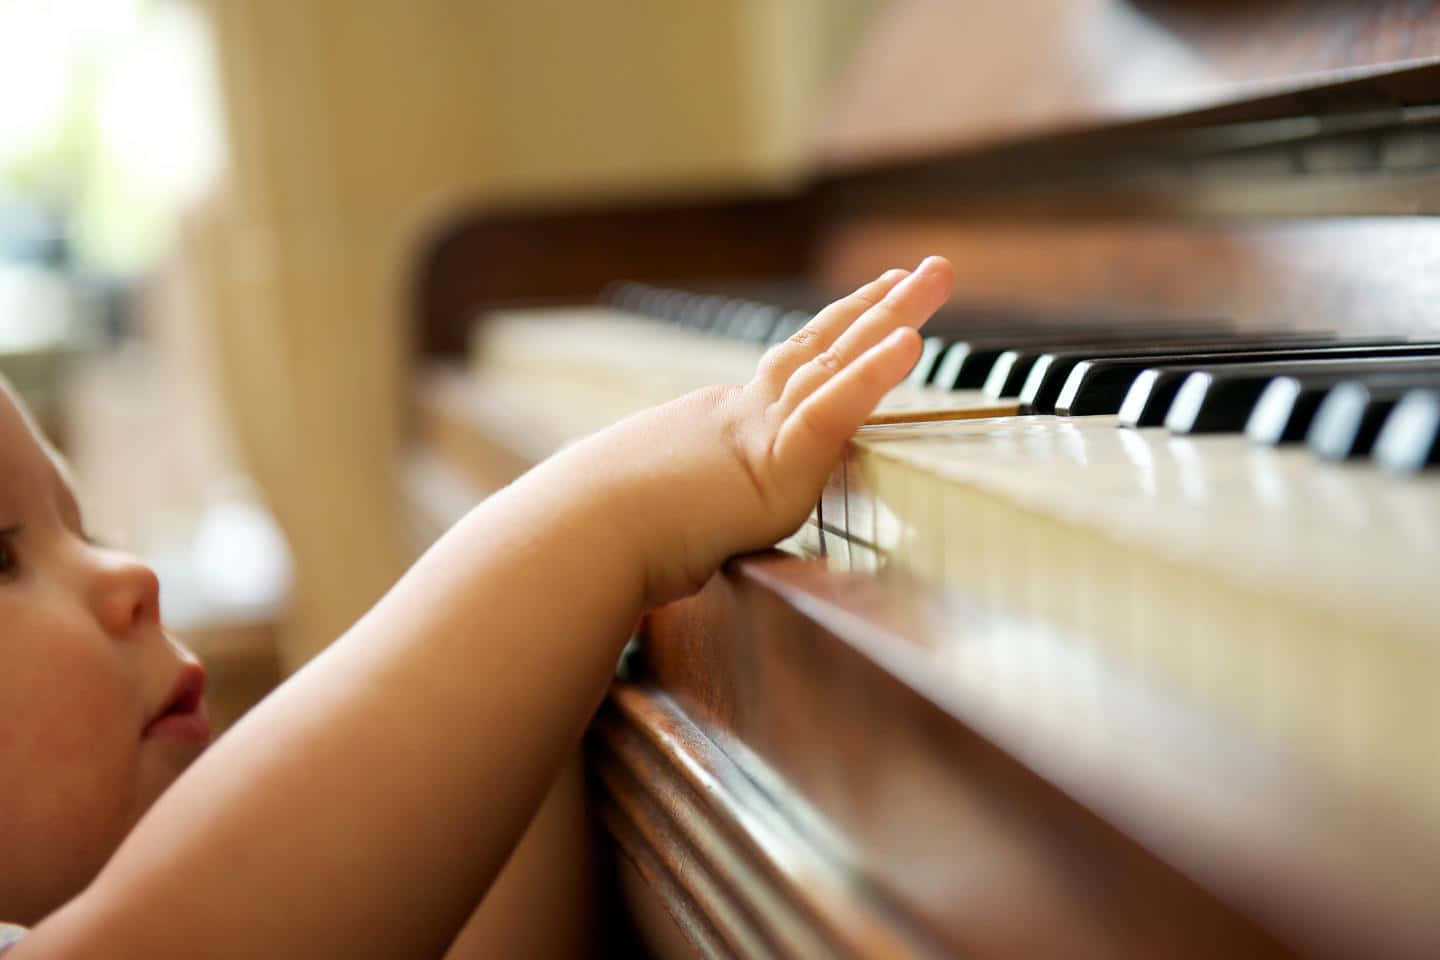 Einbaby Spielt Klavier Mit Seiner Hand.